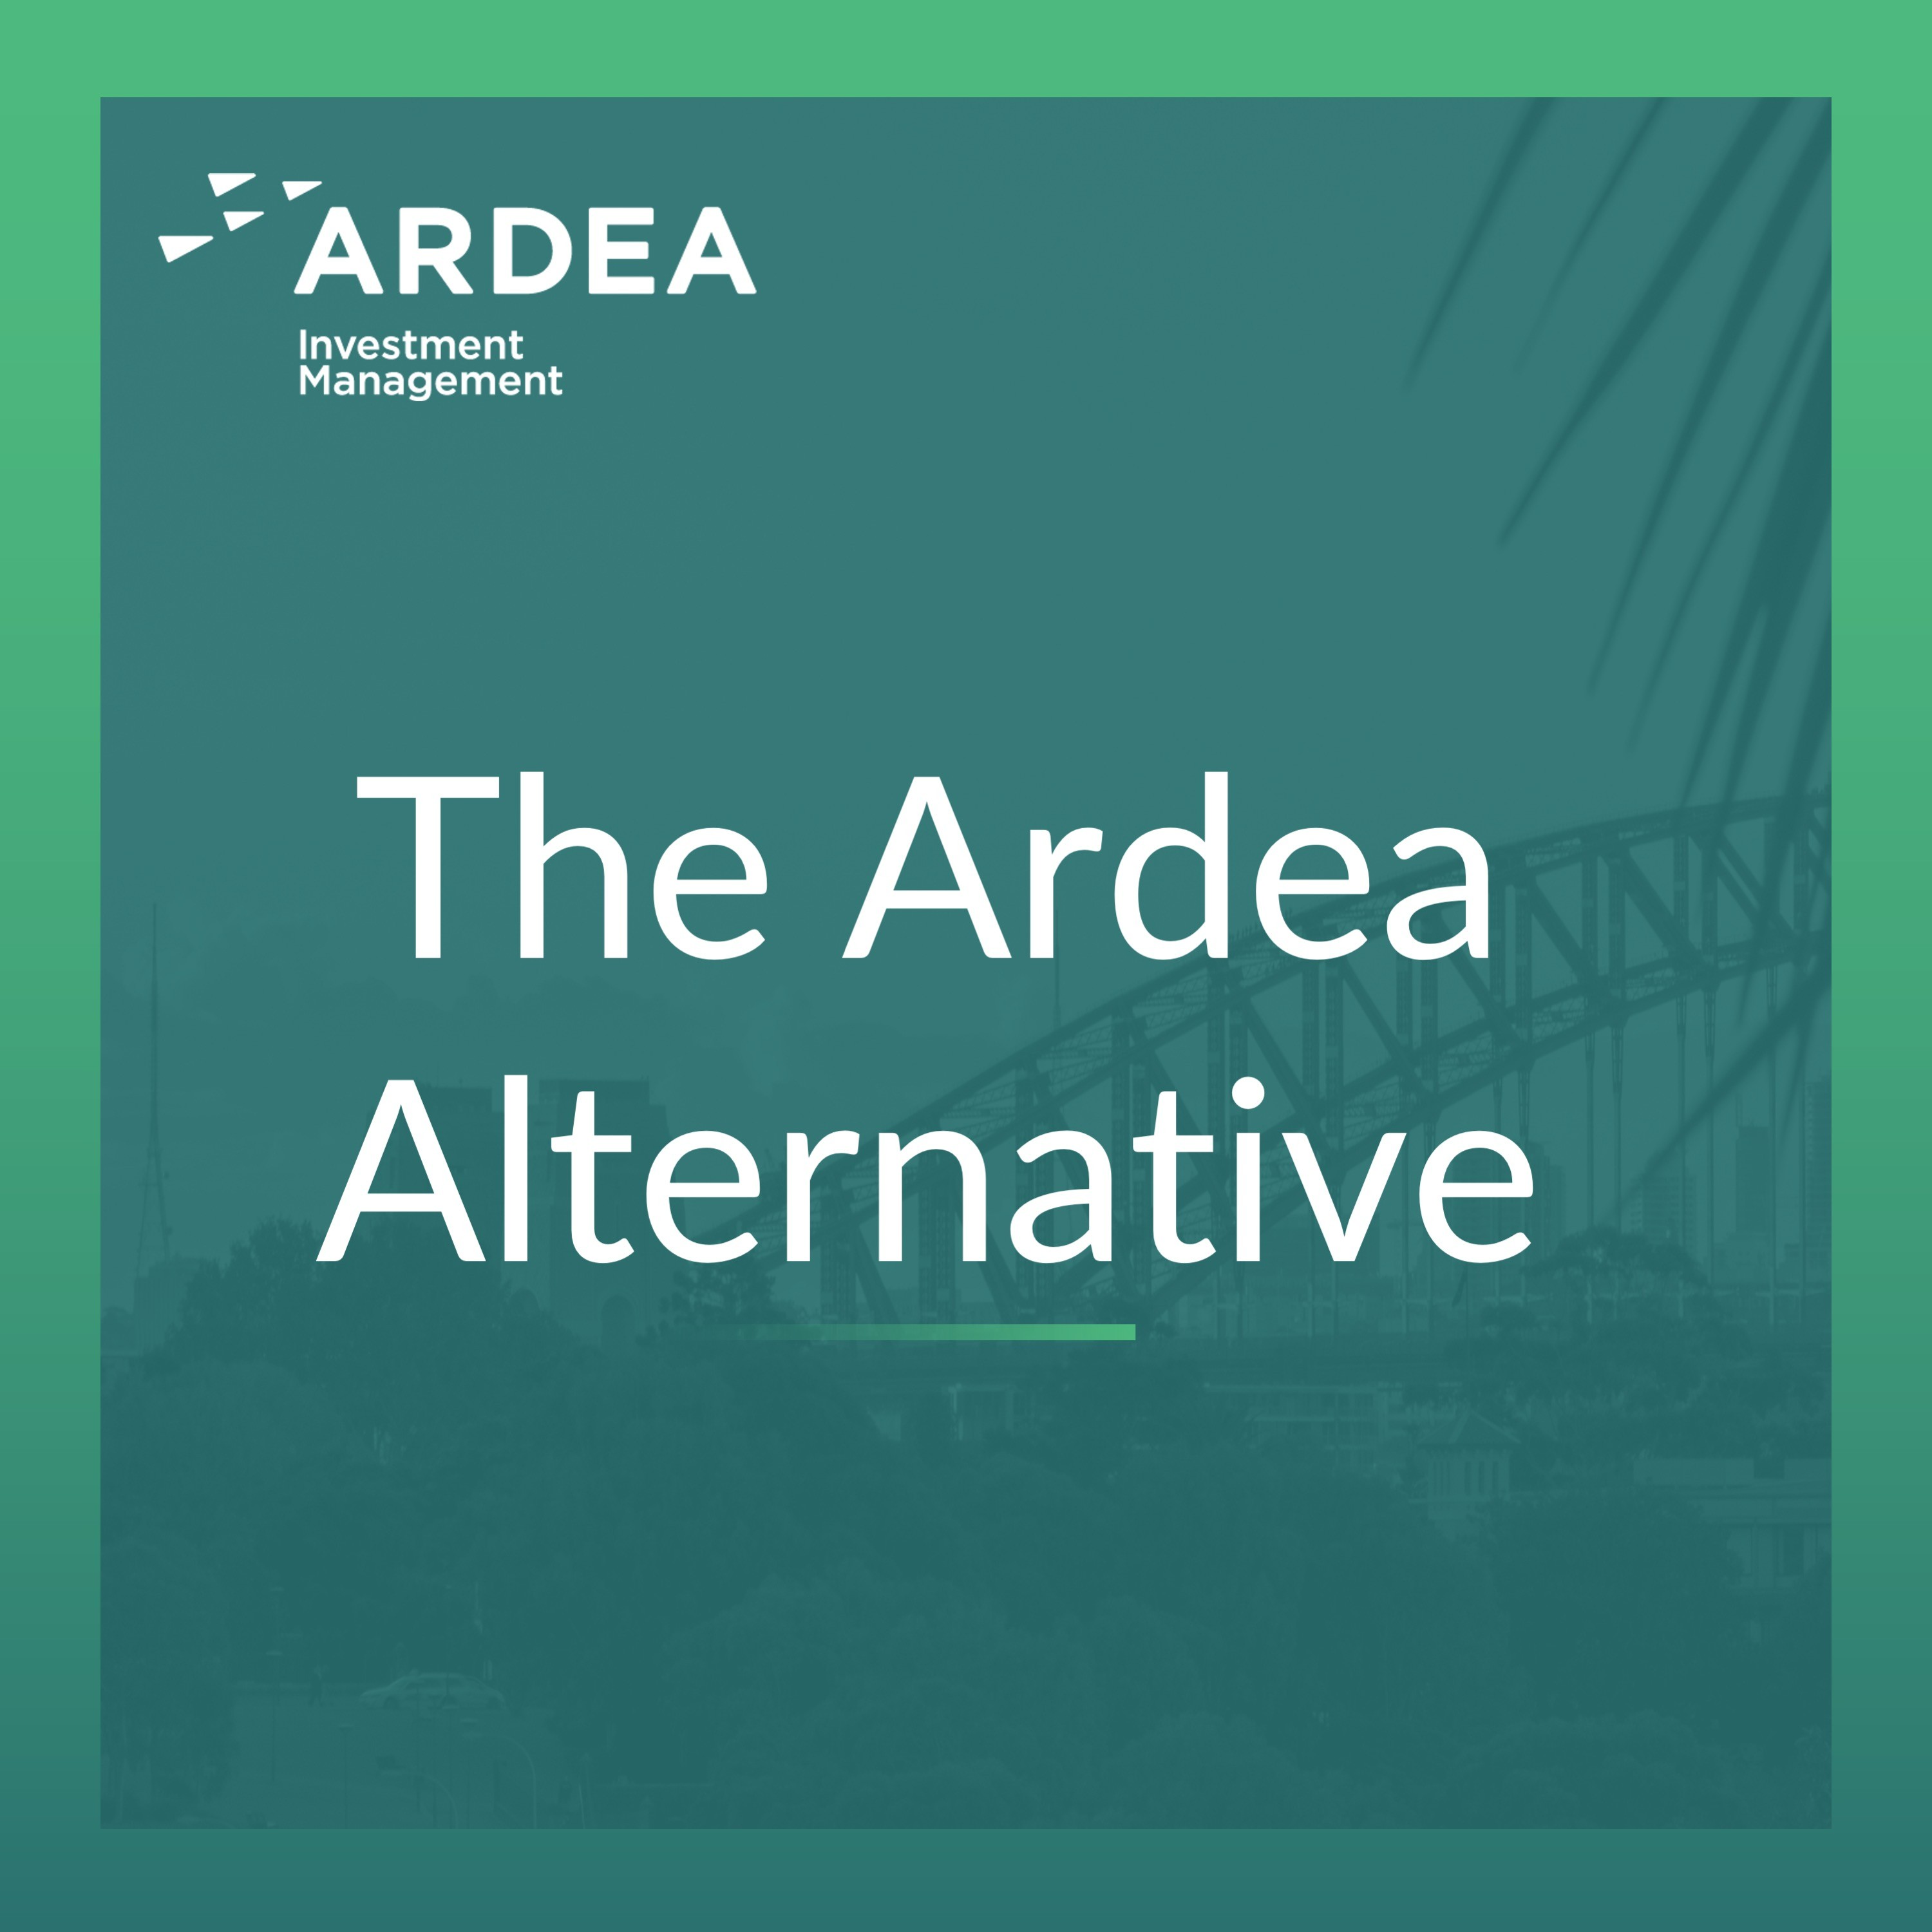 The Ardea Alternative